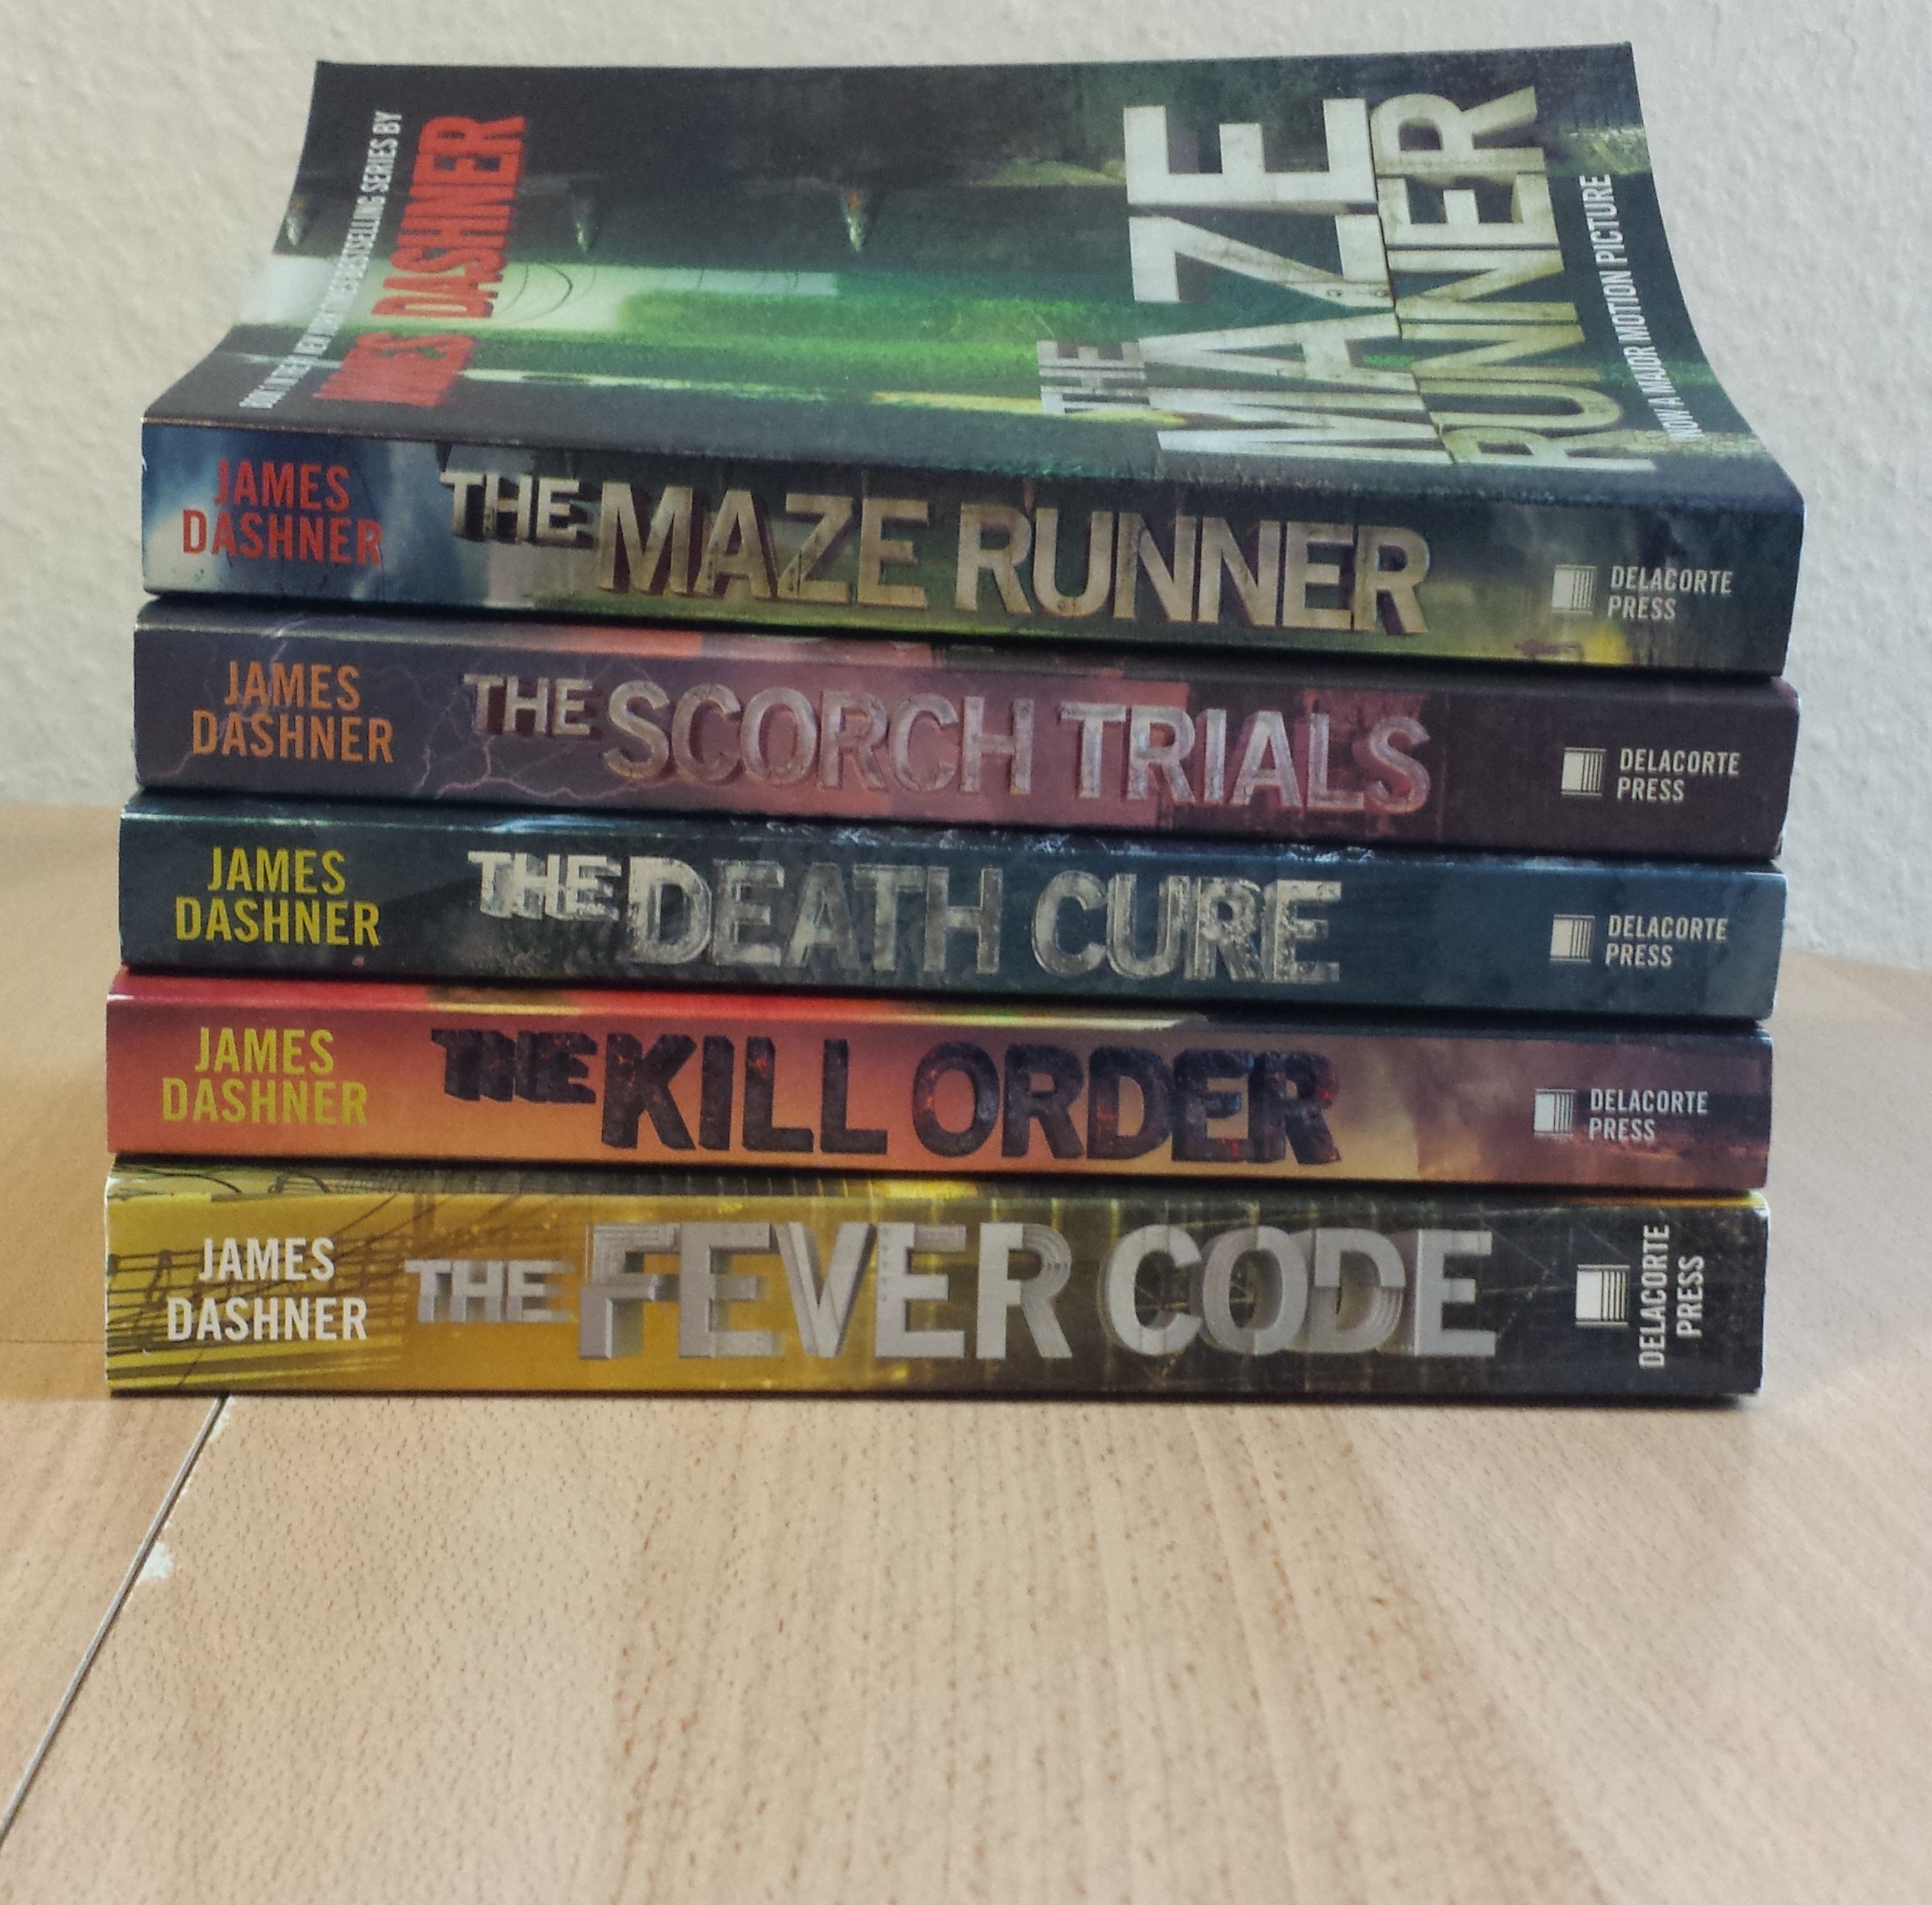 the order of maze runner books